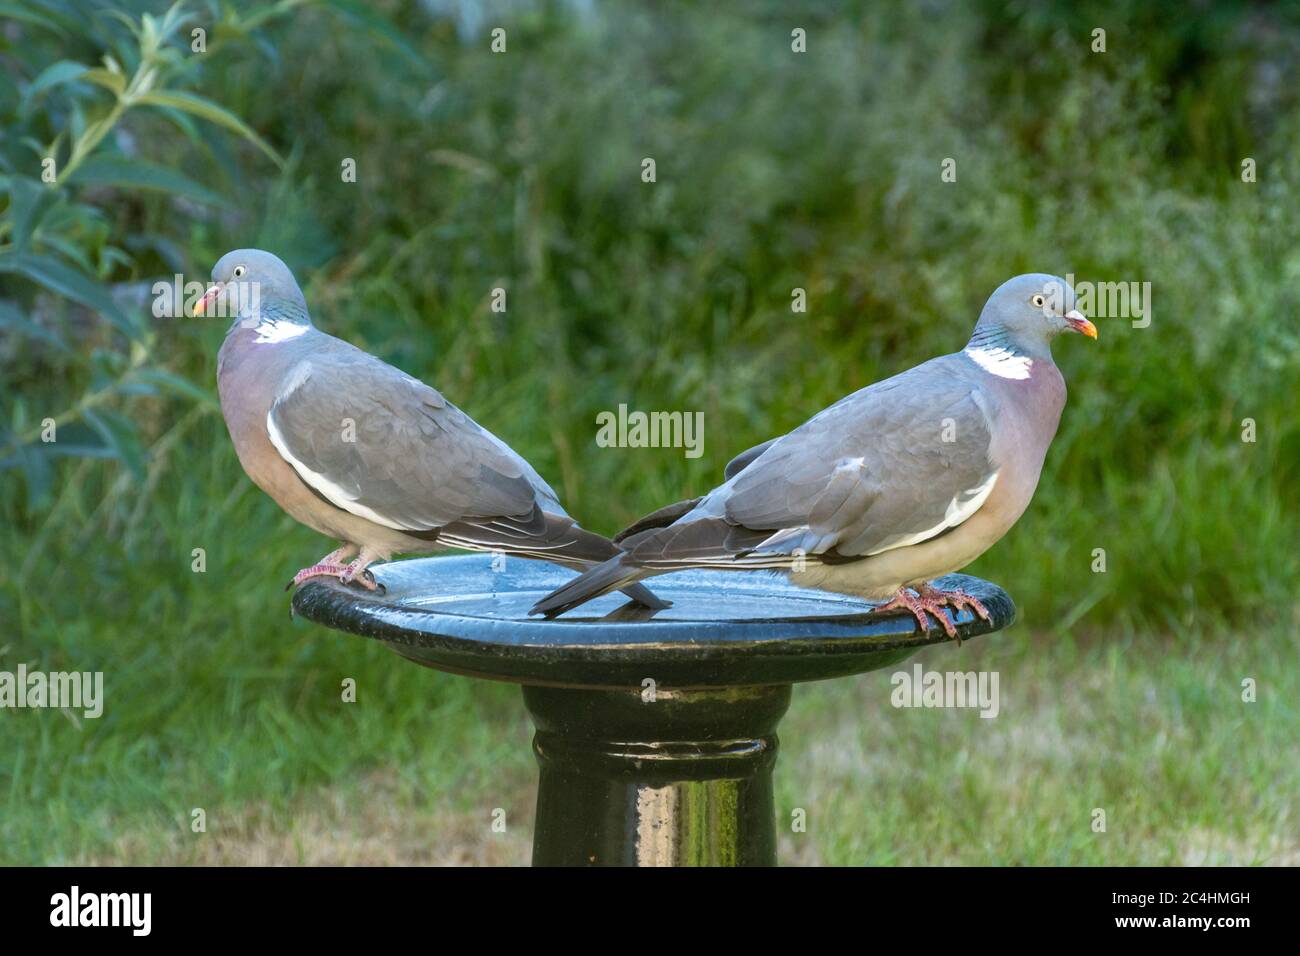 Coppia di piccioni di legno (Columba Palumbus) su un bagno di uccelli giardino rivolto in direzioni opposte Foto Stock